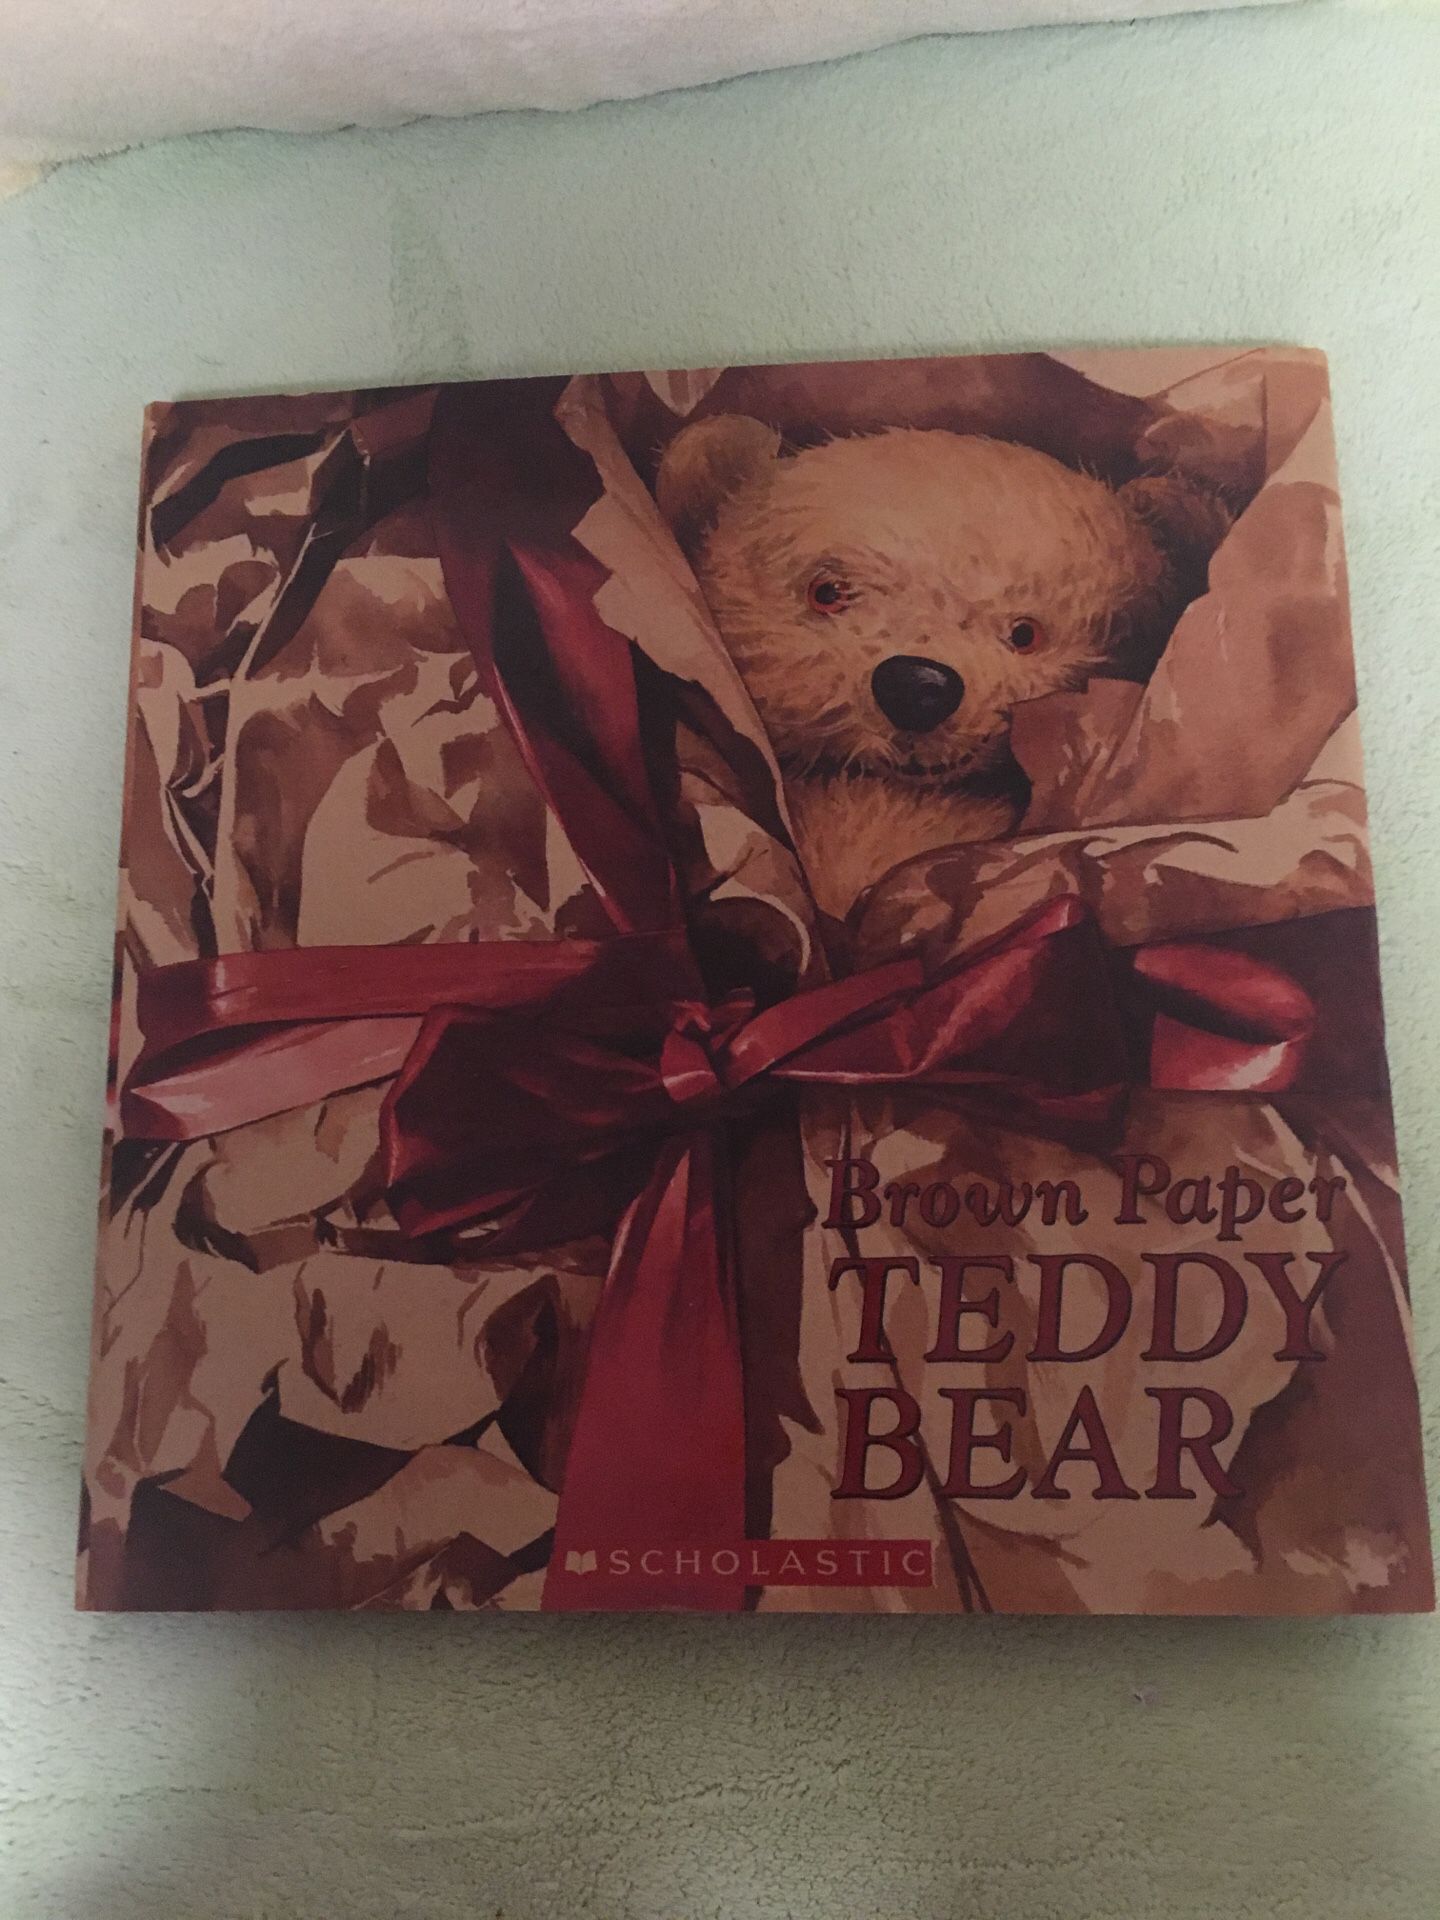 Brown paper teddy bear